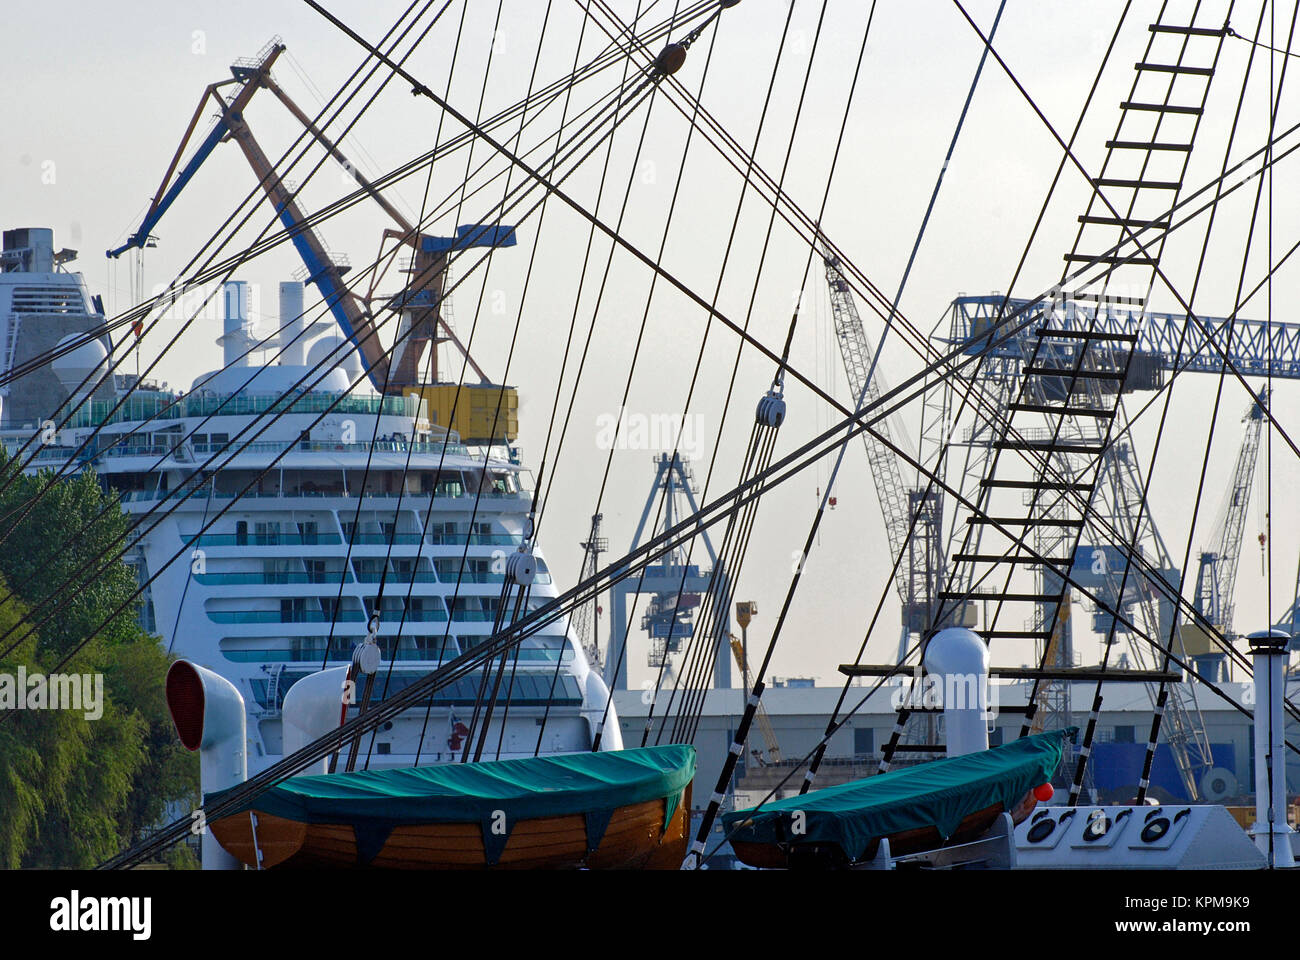 Hamburg, eine der schönsten und beliebtesten Reiseziele der Welt. Takelage eines Matrosen im Hafen von Hamburg. Stockfoto